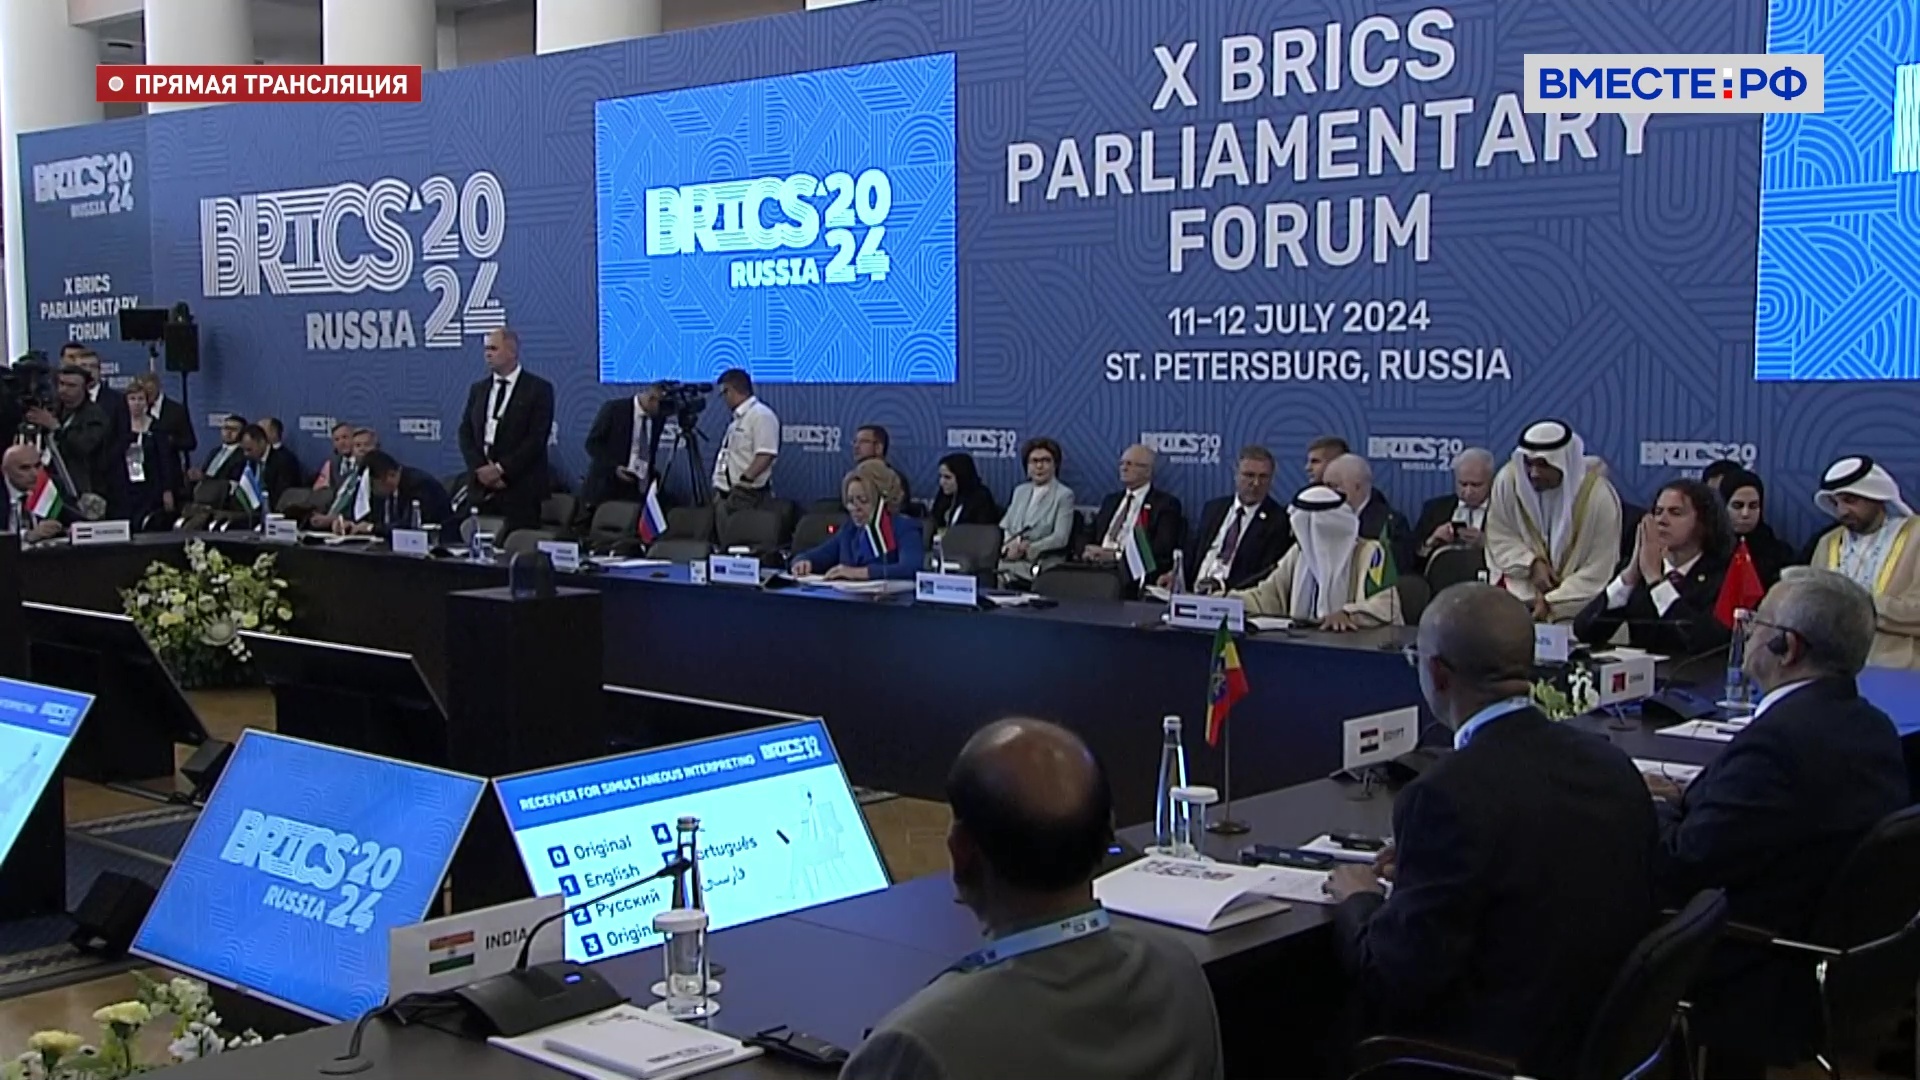 Матвиенко: Парламентский форум БРИКС за годы существования стал авторитетной и эффективной площадкой